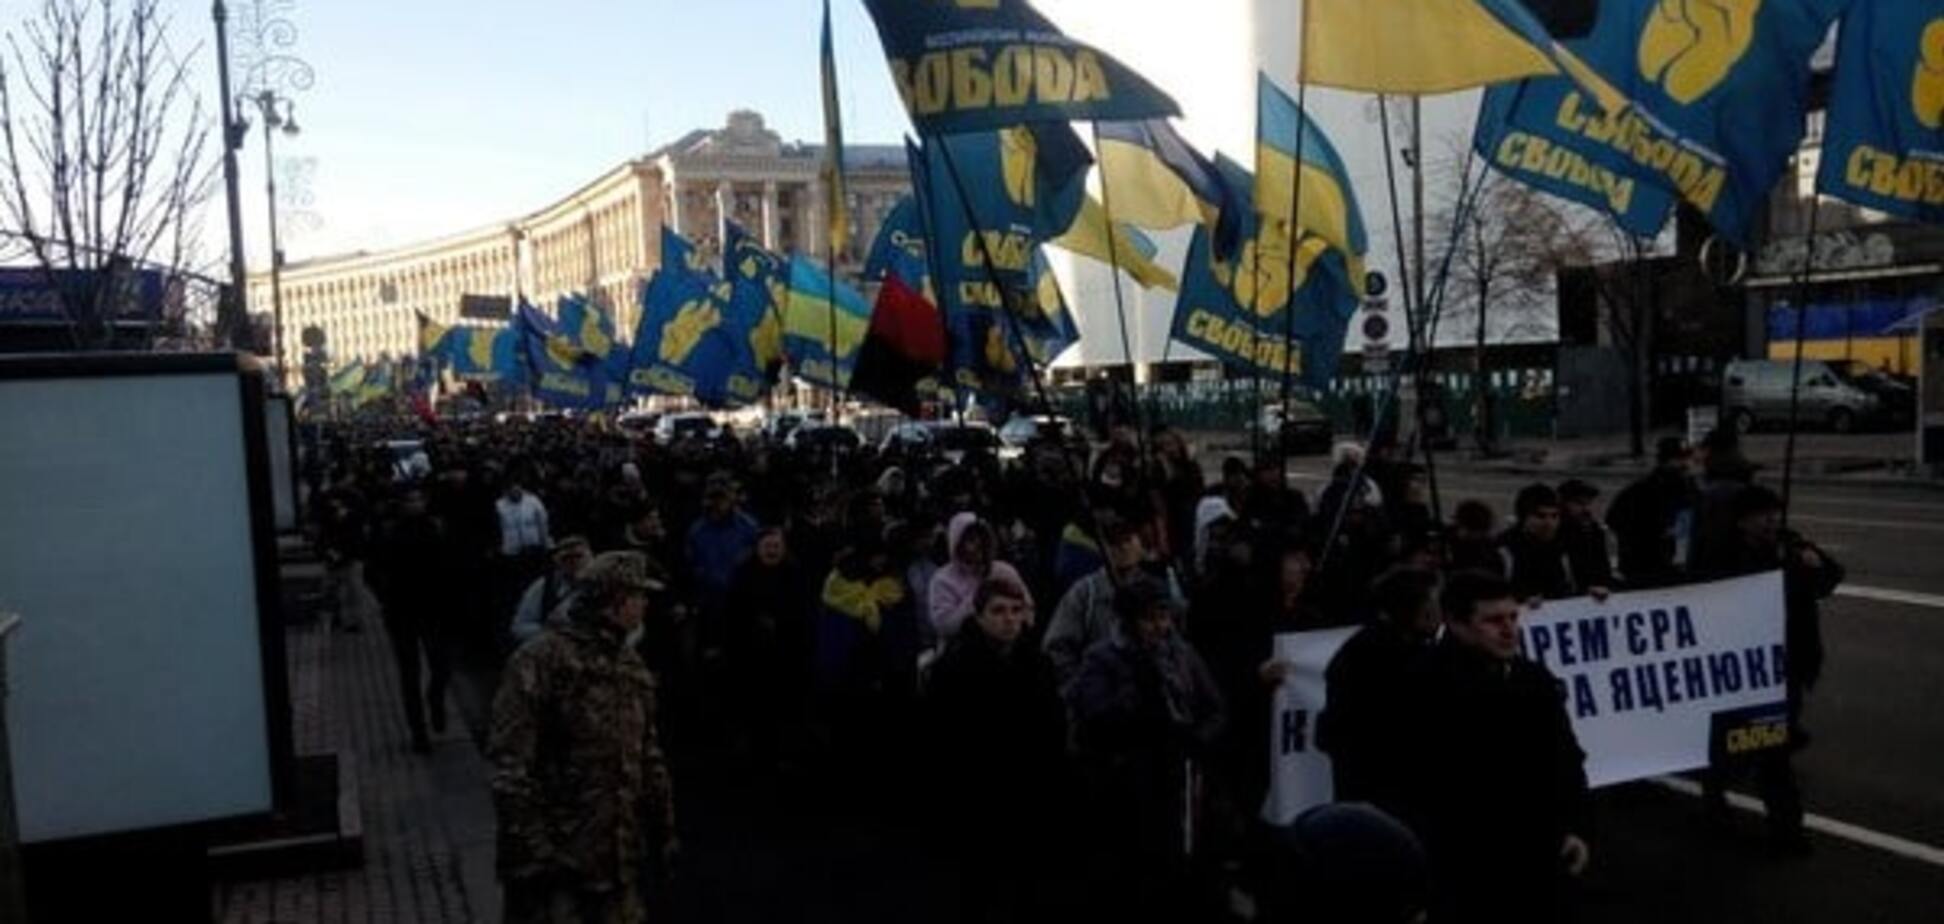 'Яценяку на гілляку!': У Києві проходить мітинг за відставку Яценюка. Опубліковані фото